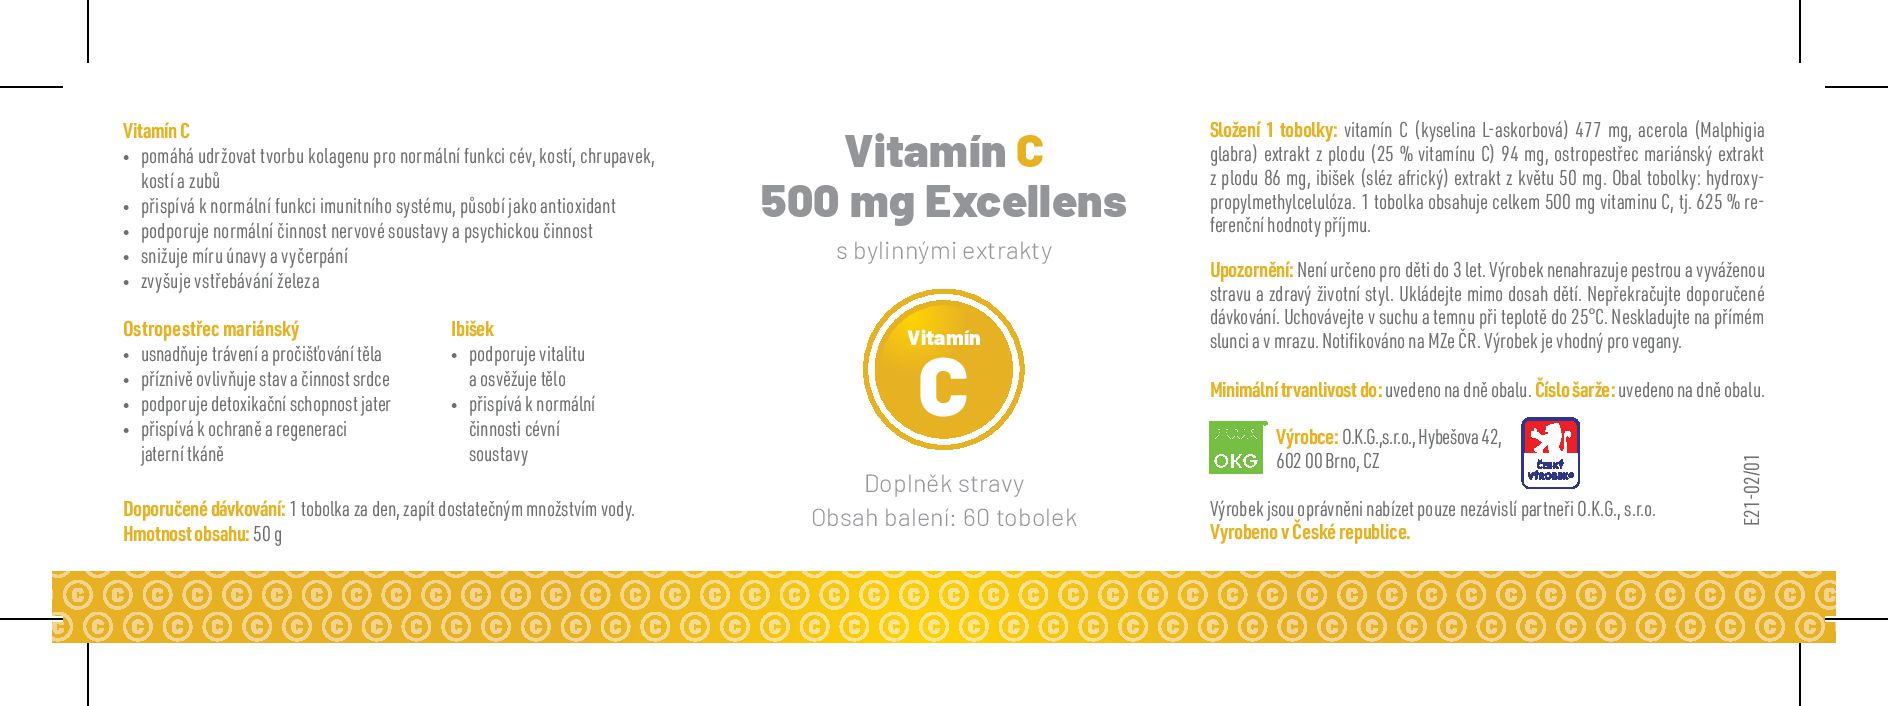 etiketa vitamin C